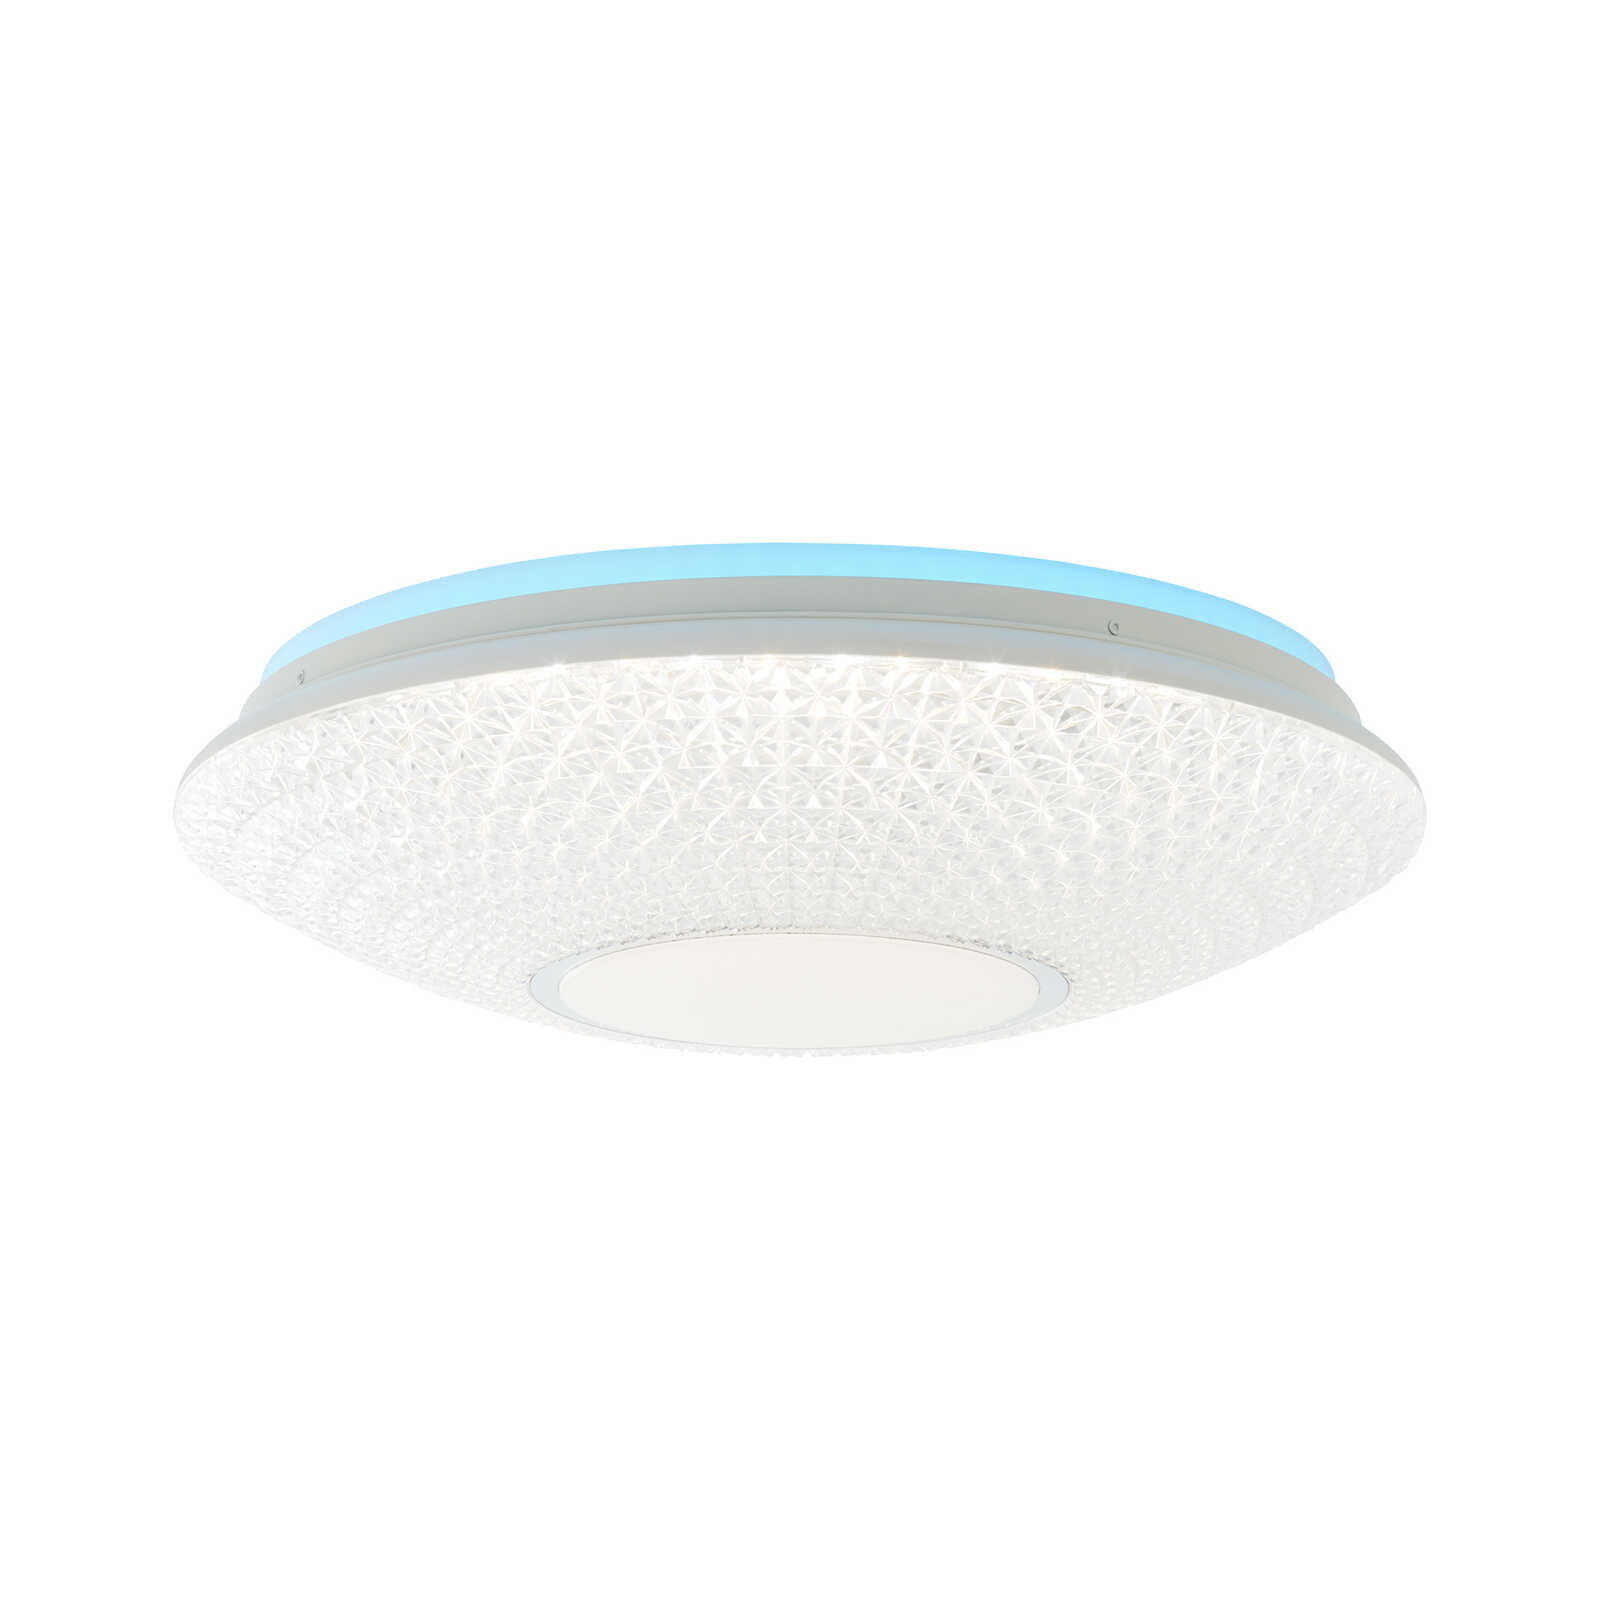 Plastic ceiling light - Leandra 2 - White
